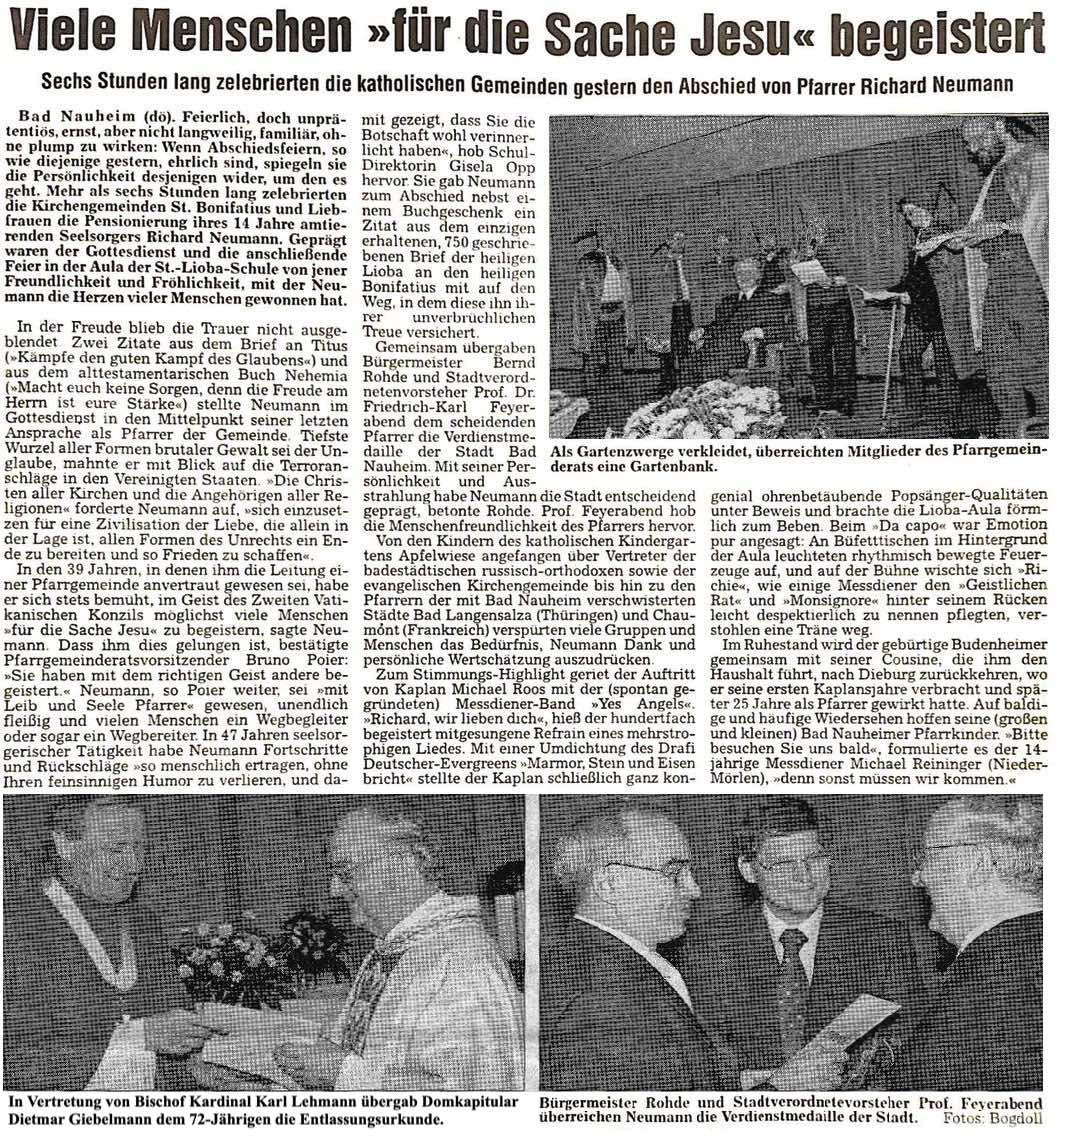 Wetterauer Zeitung vom 1.9.2001 (c) Wetterauer Zeitung